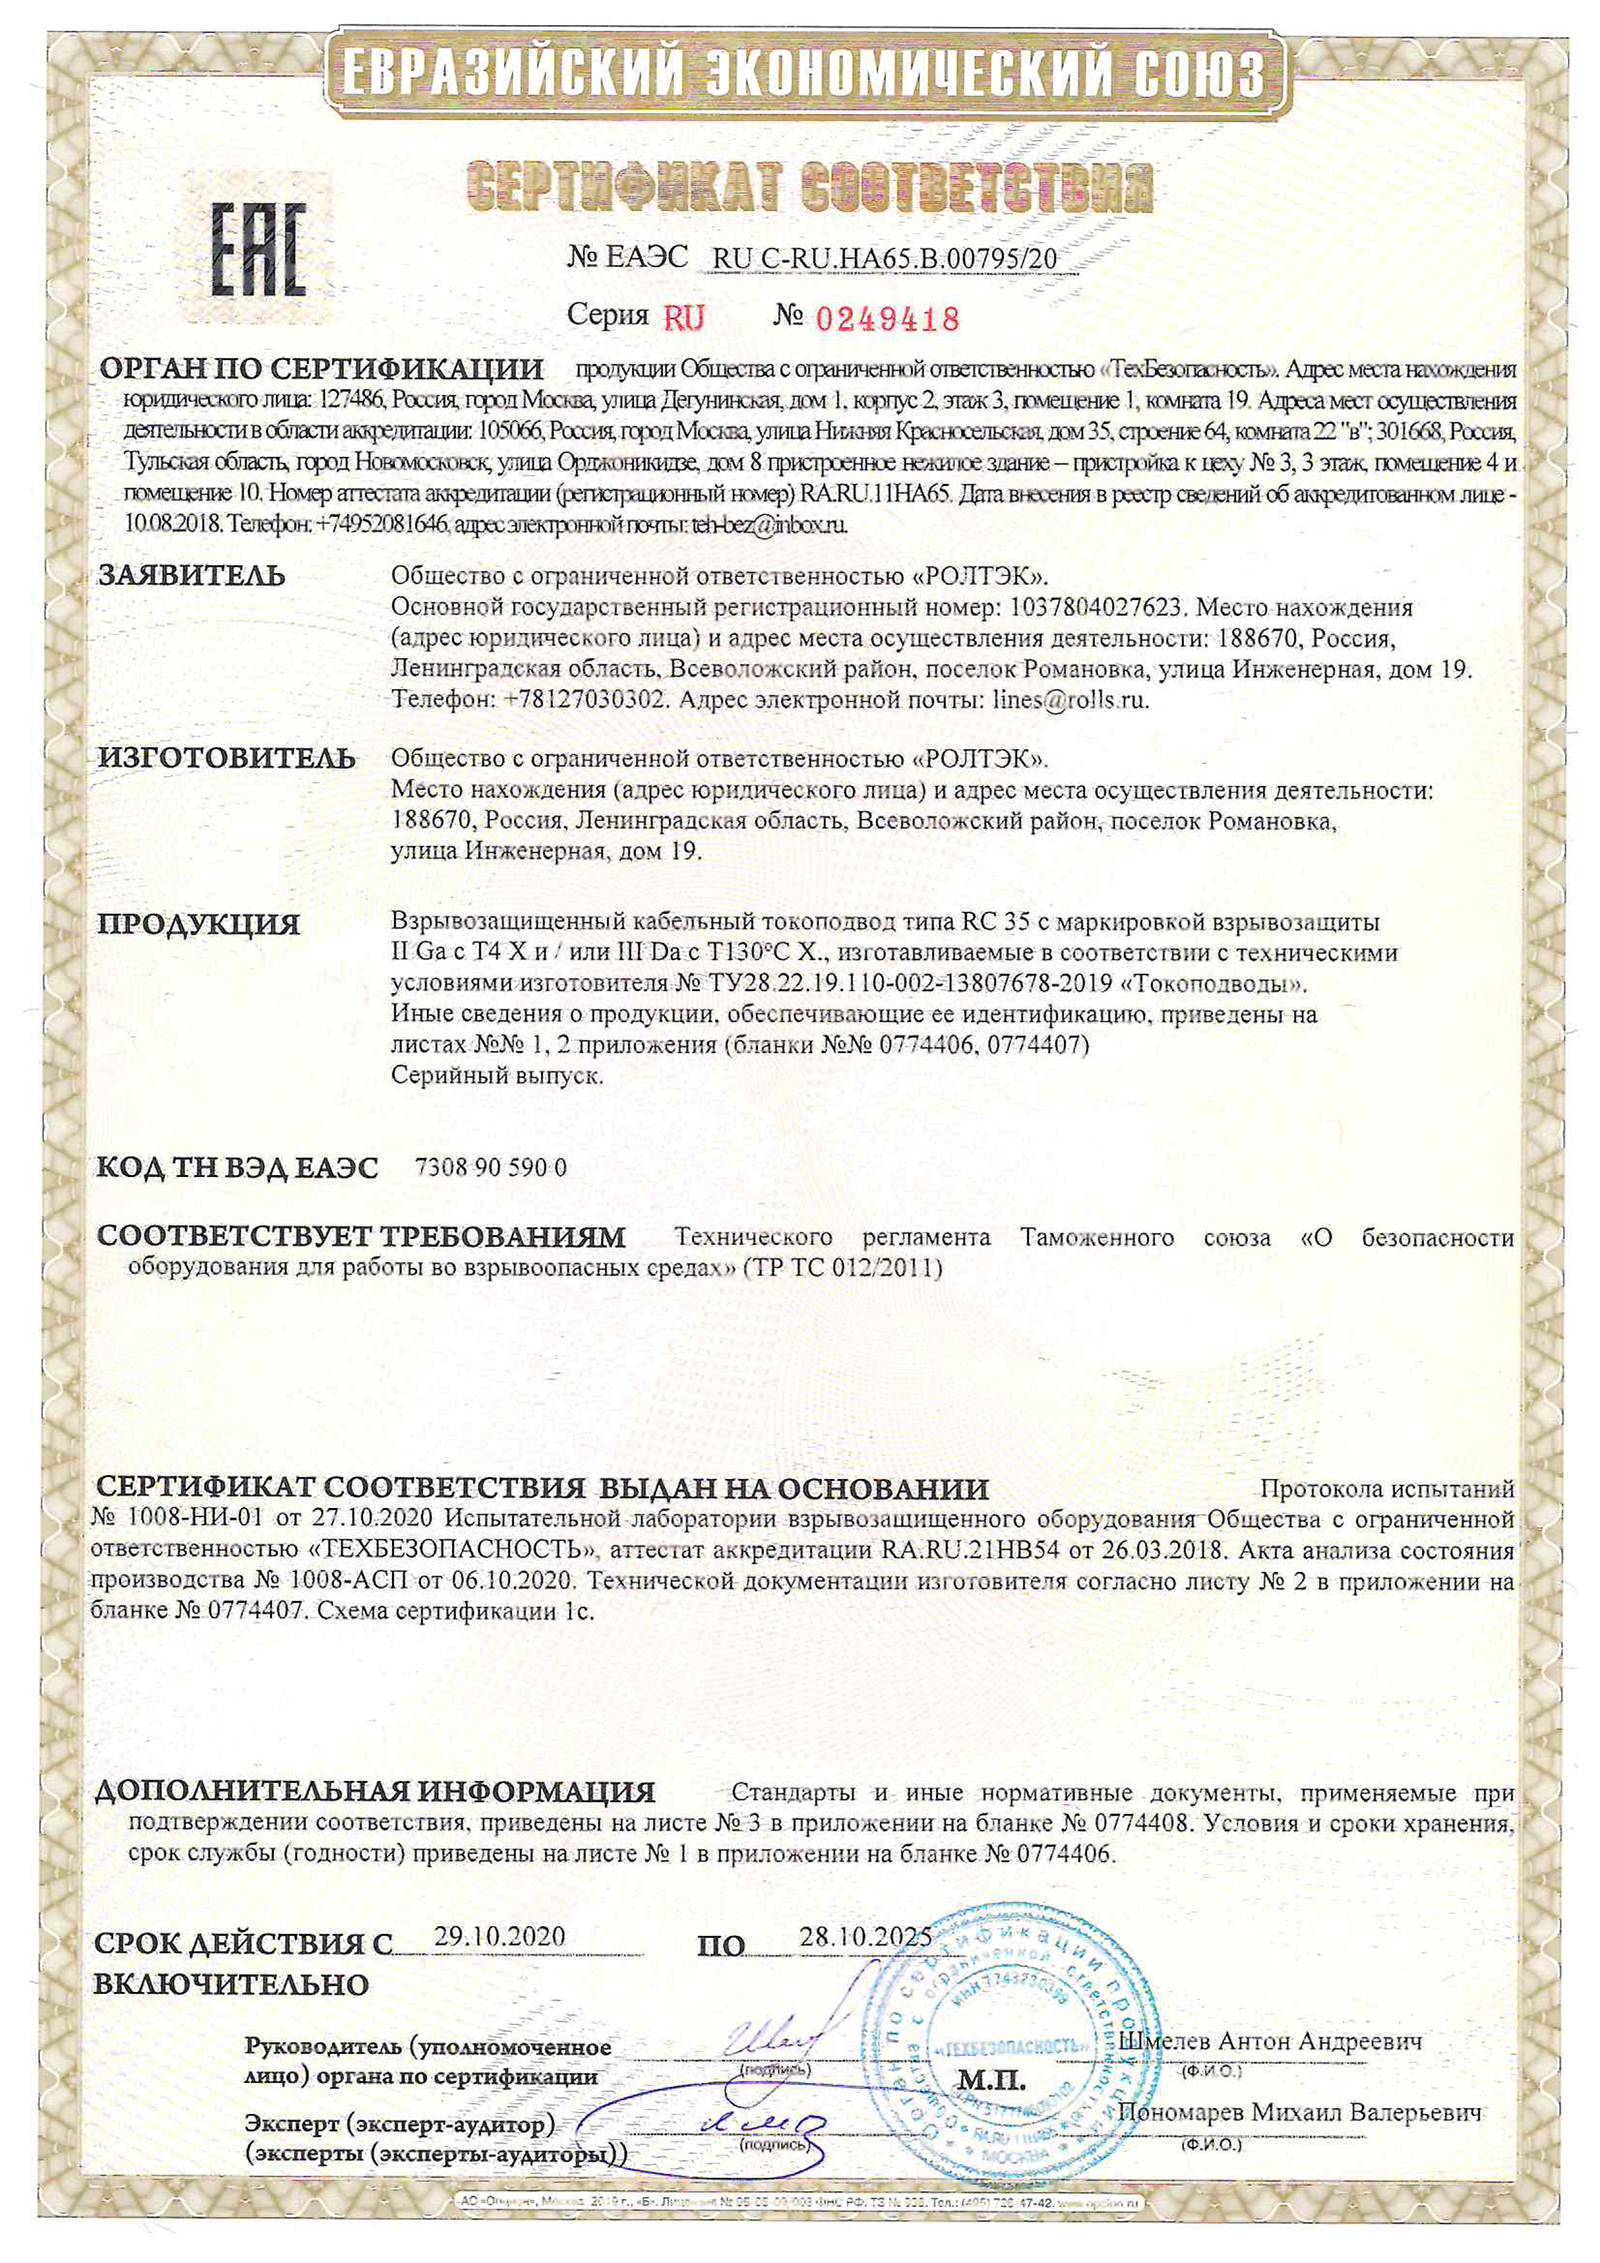 Сертификат соответствия ТР ТС 012/2011